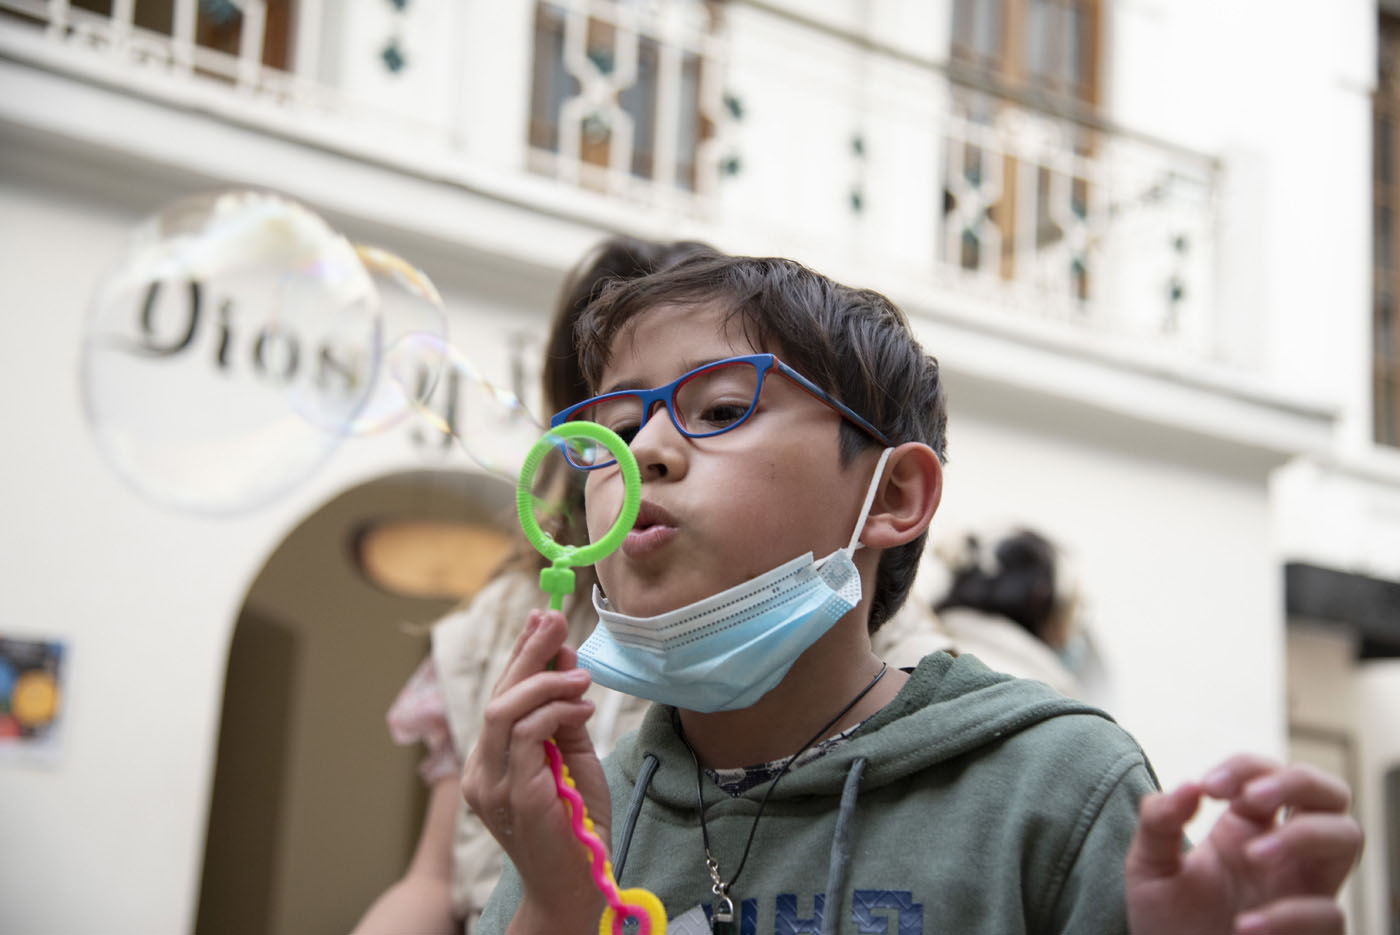 Niños y adultos podrán divertirse a lo grande haciendo burbujas en el Museo de la Ciencia y el Juego. Foto: archivo Unimedios.